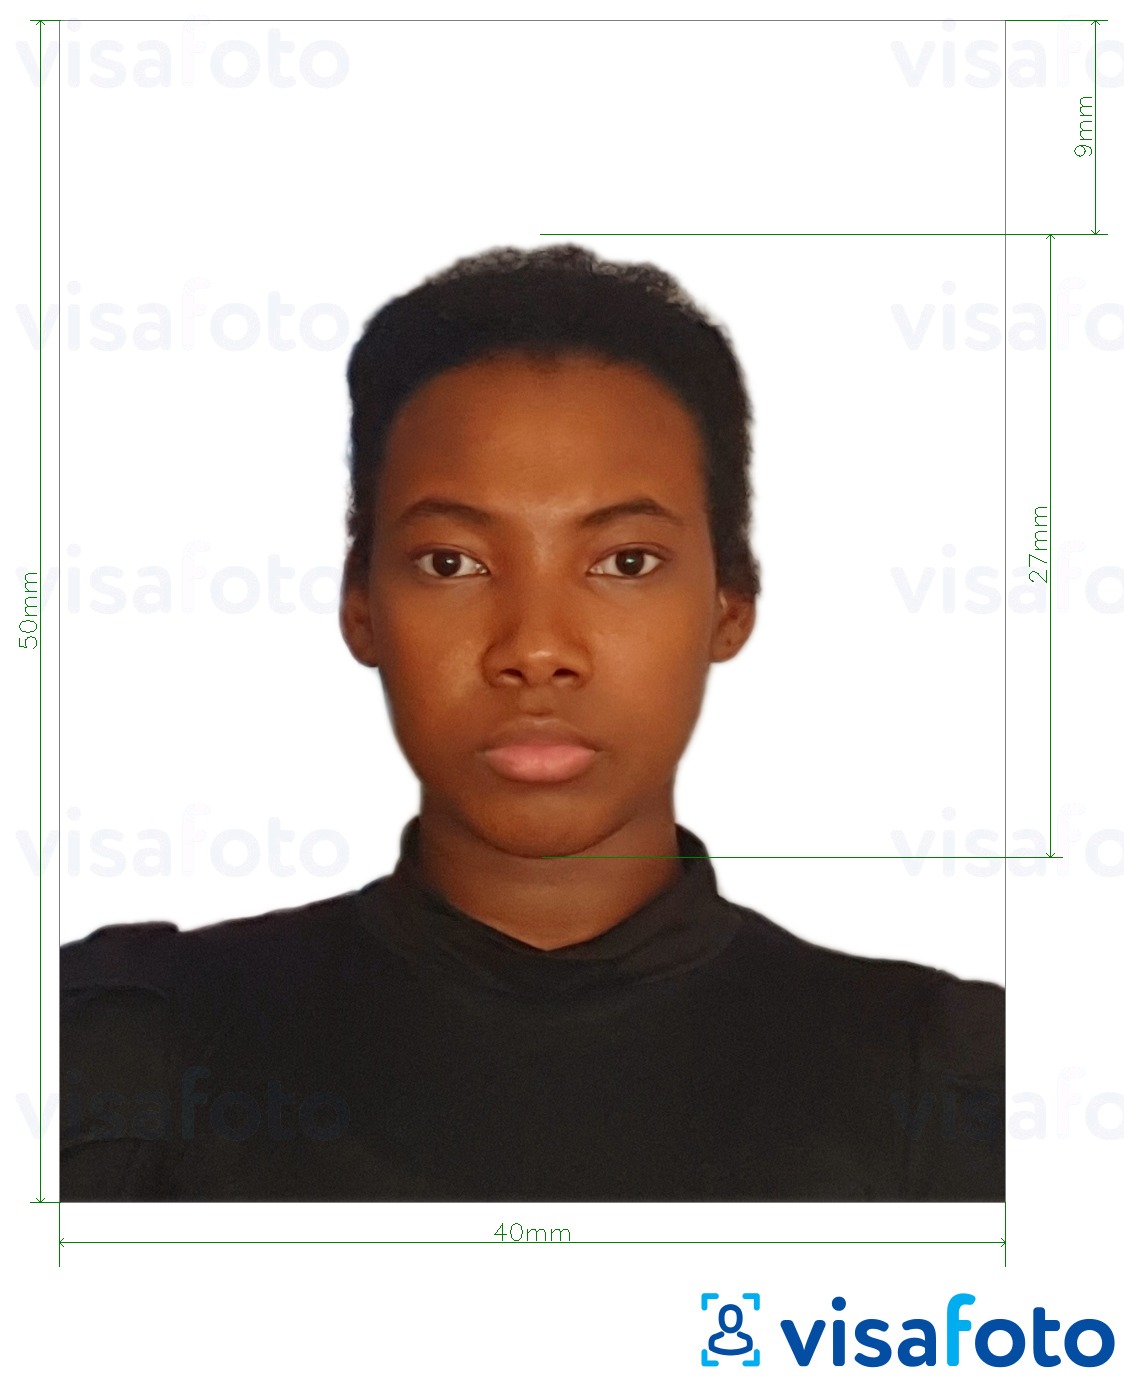 Esempio di foto per Carta d'identità Colombia 4x5 cm con specifiche delle dimensioni esatte